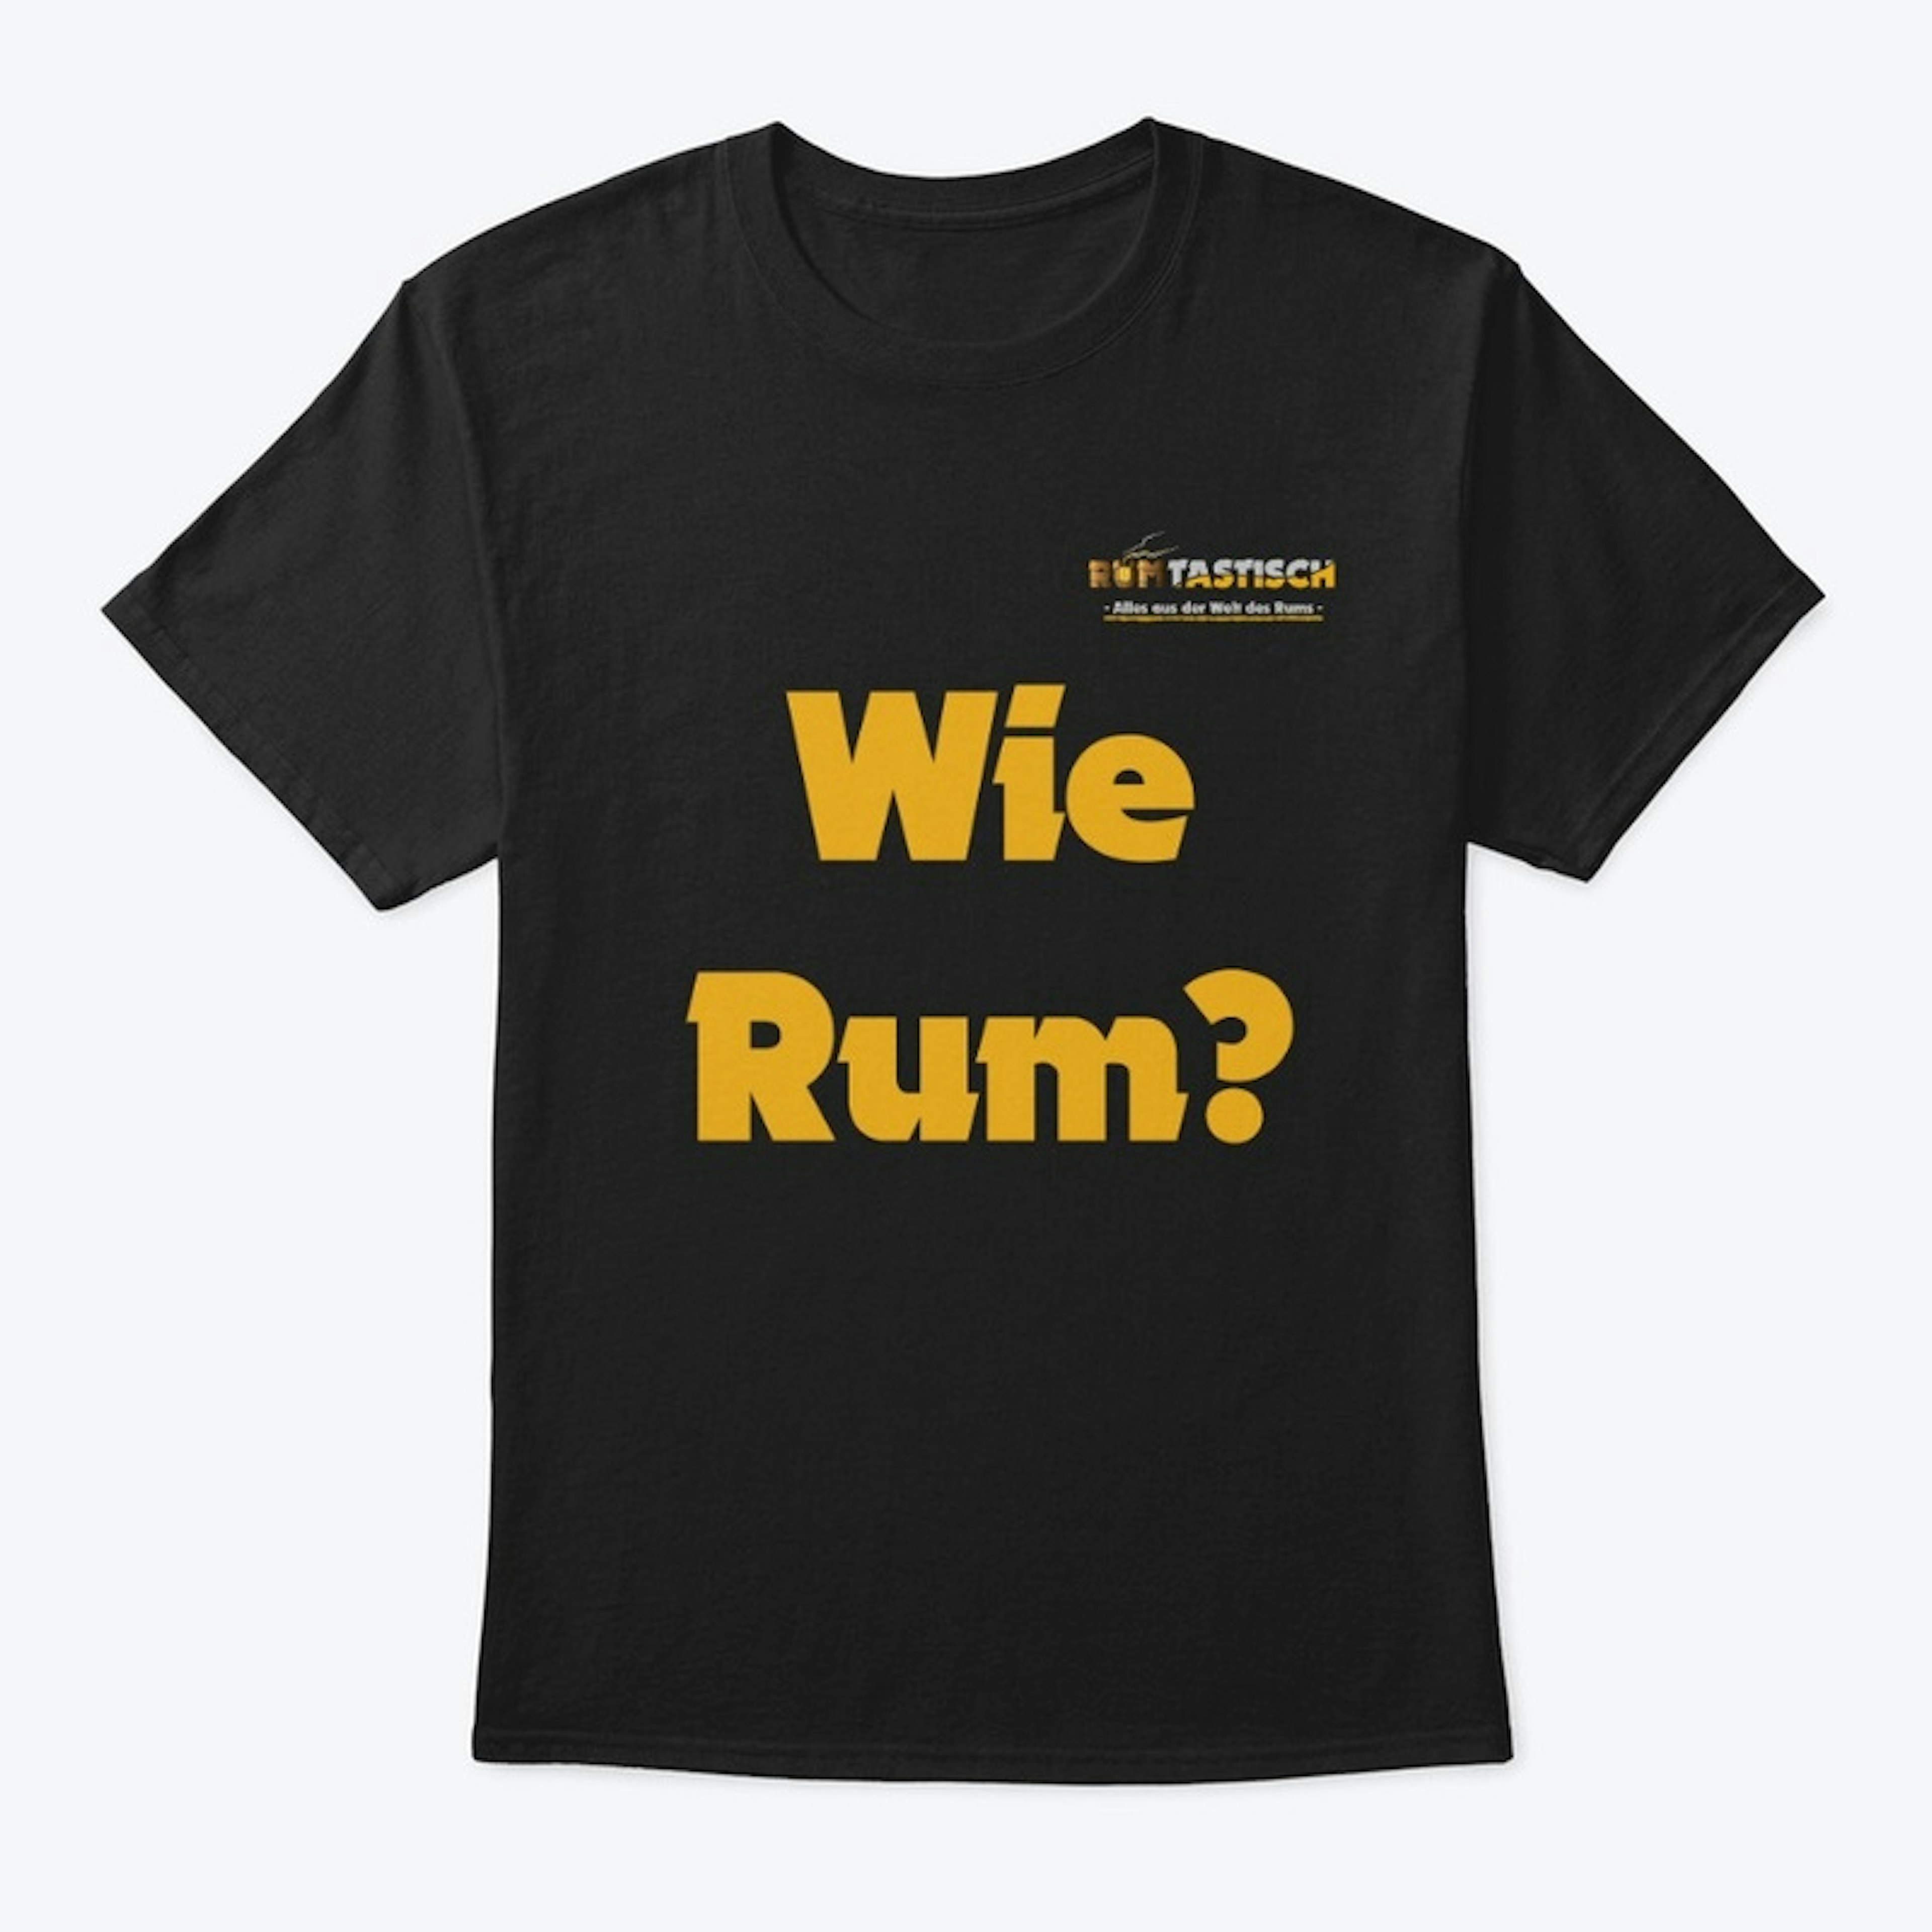 Wie Rum?